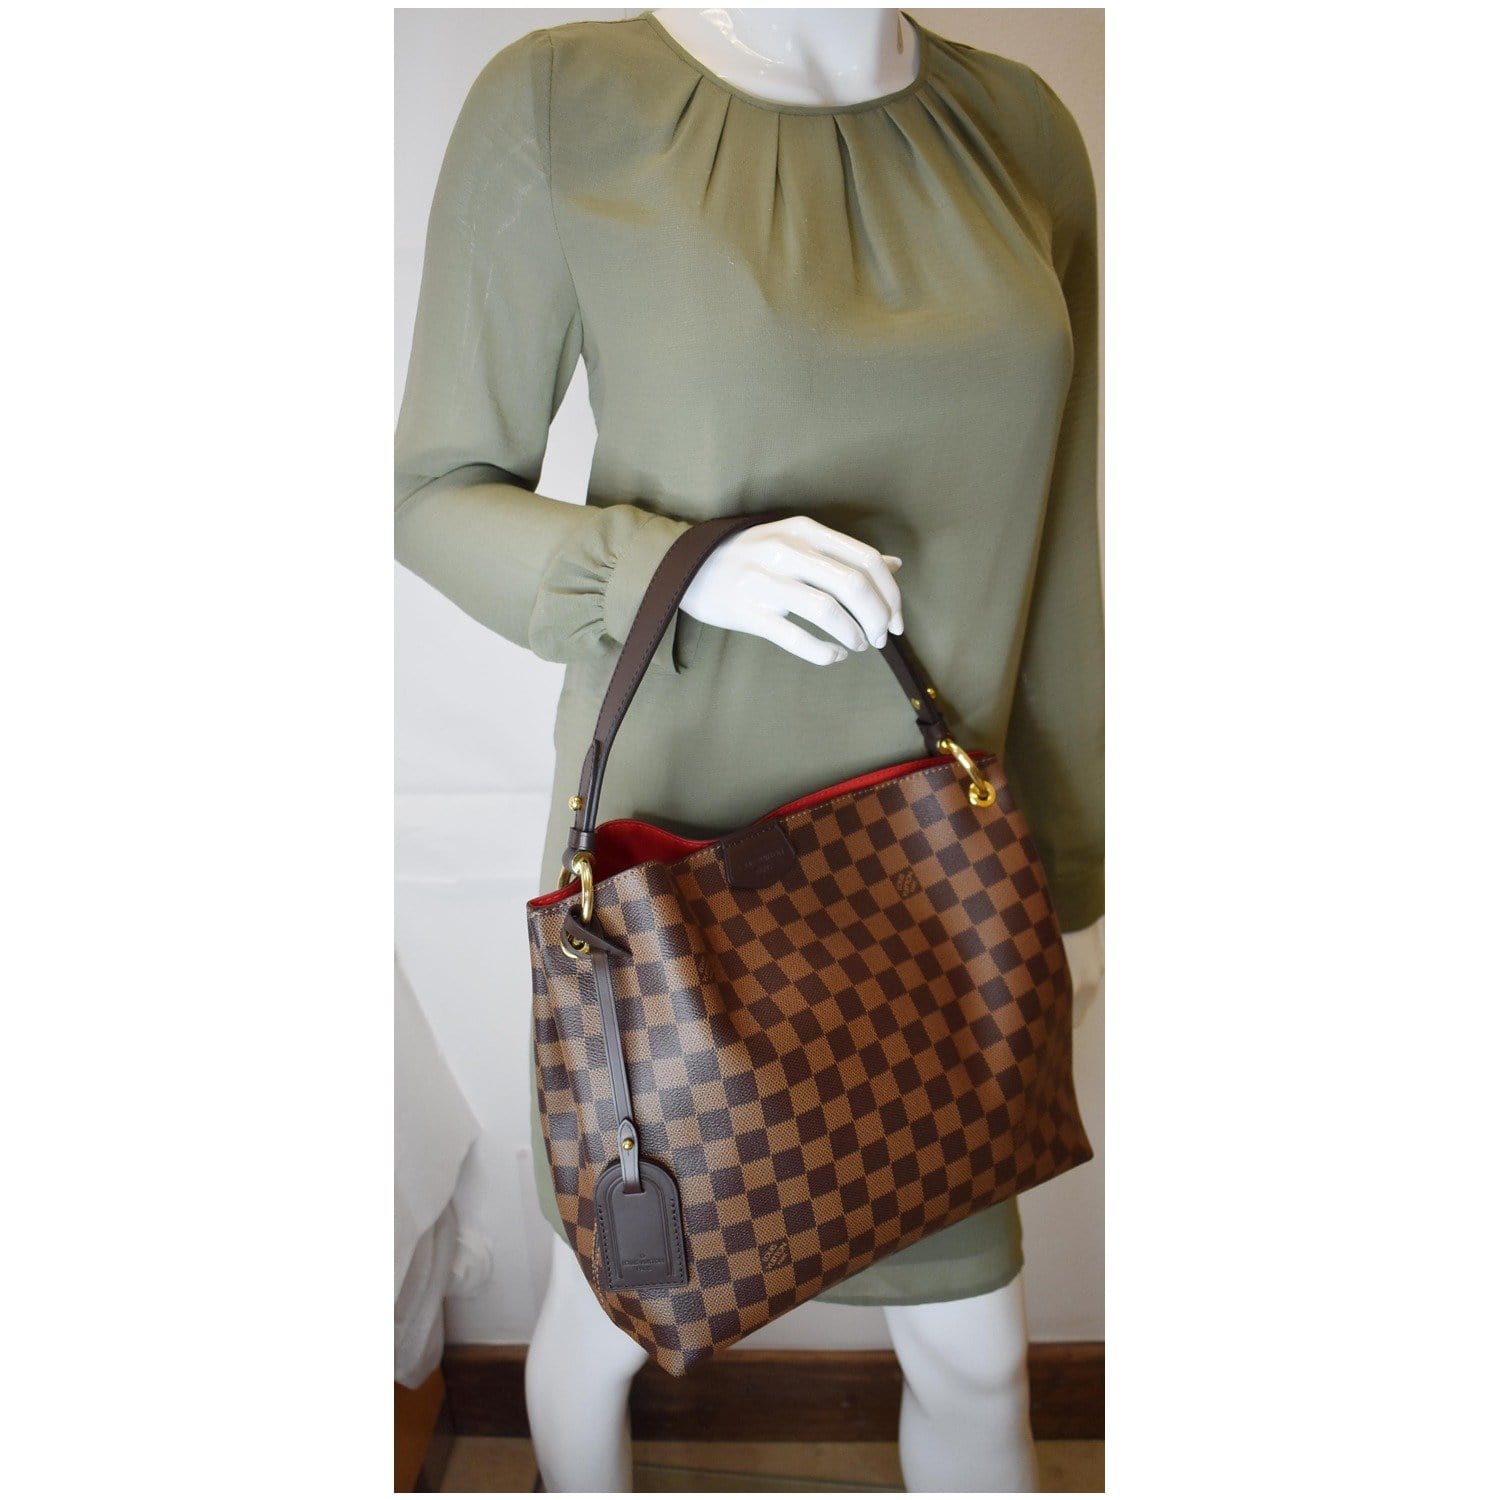 Louis Vuitton Womens Handbags, Brown